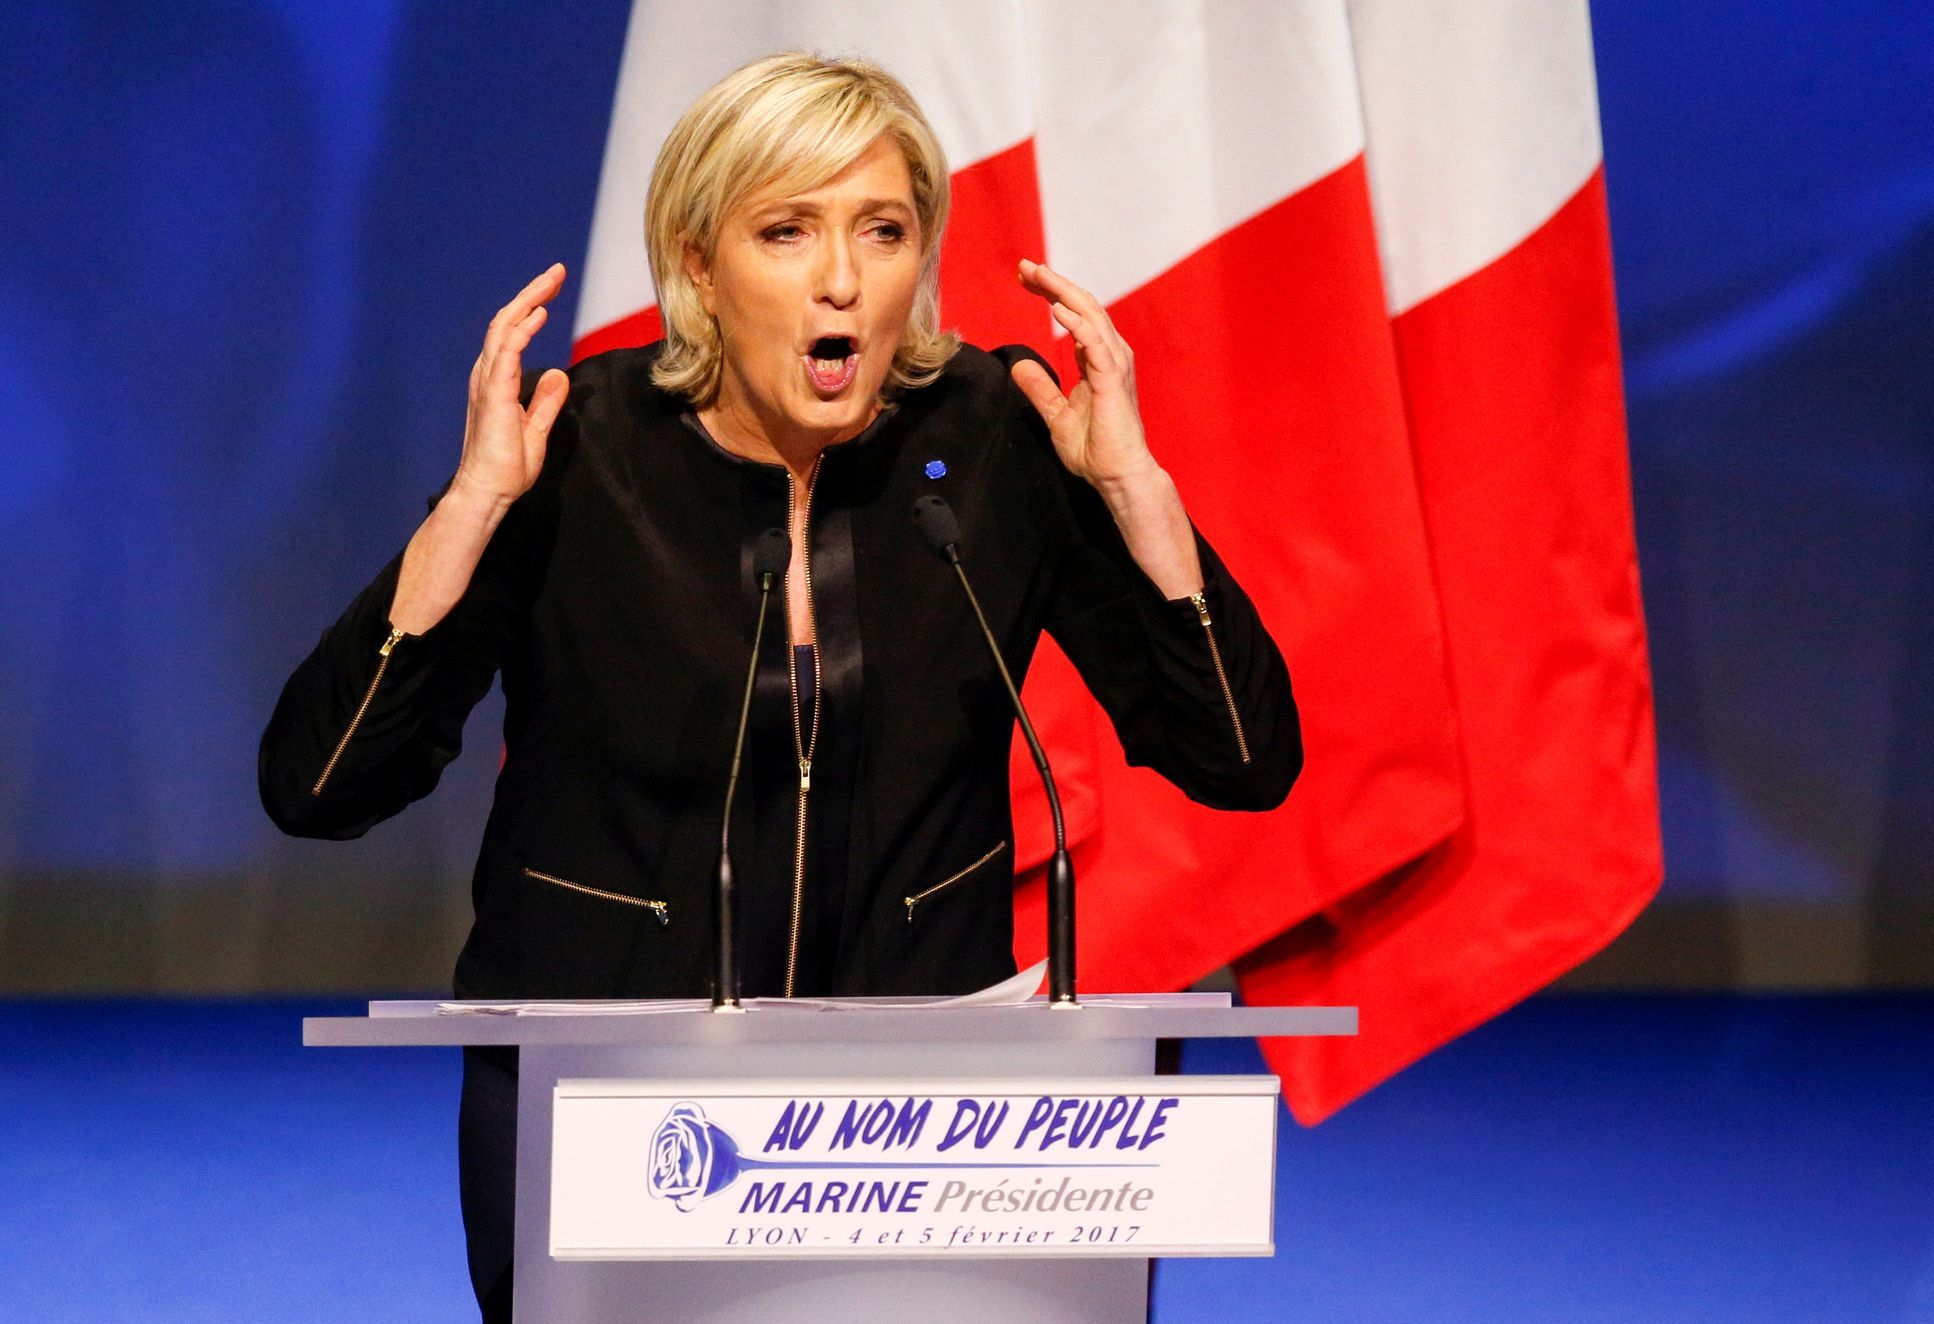 Le Penová: Hlavními hrozbami pro Francii jsou ekonomická globalizace a  islámský fundamentalismus - Aktuálně.cz